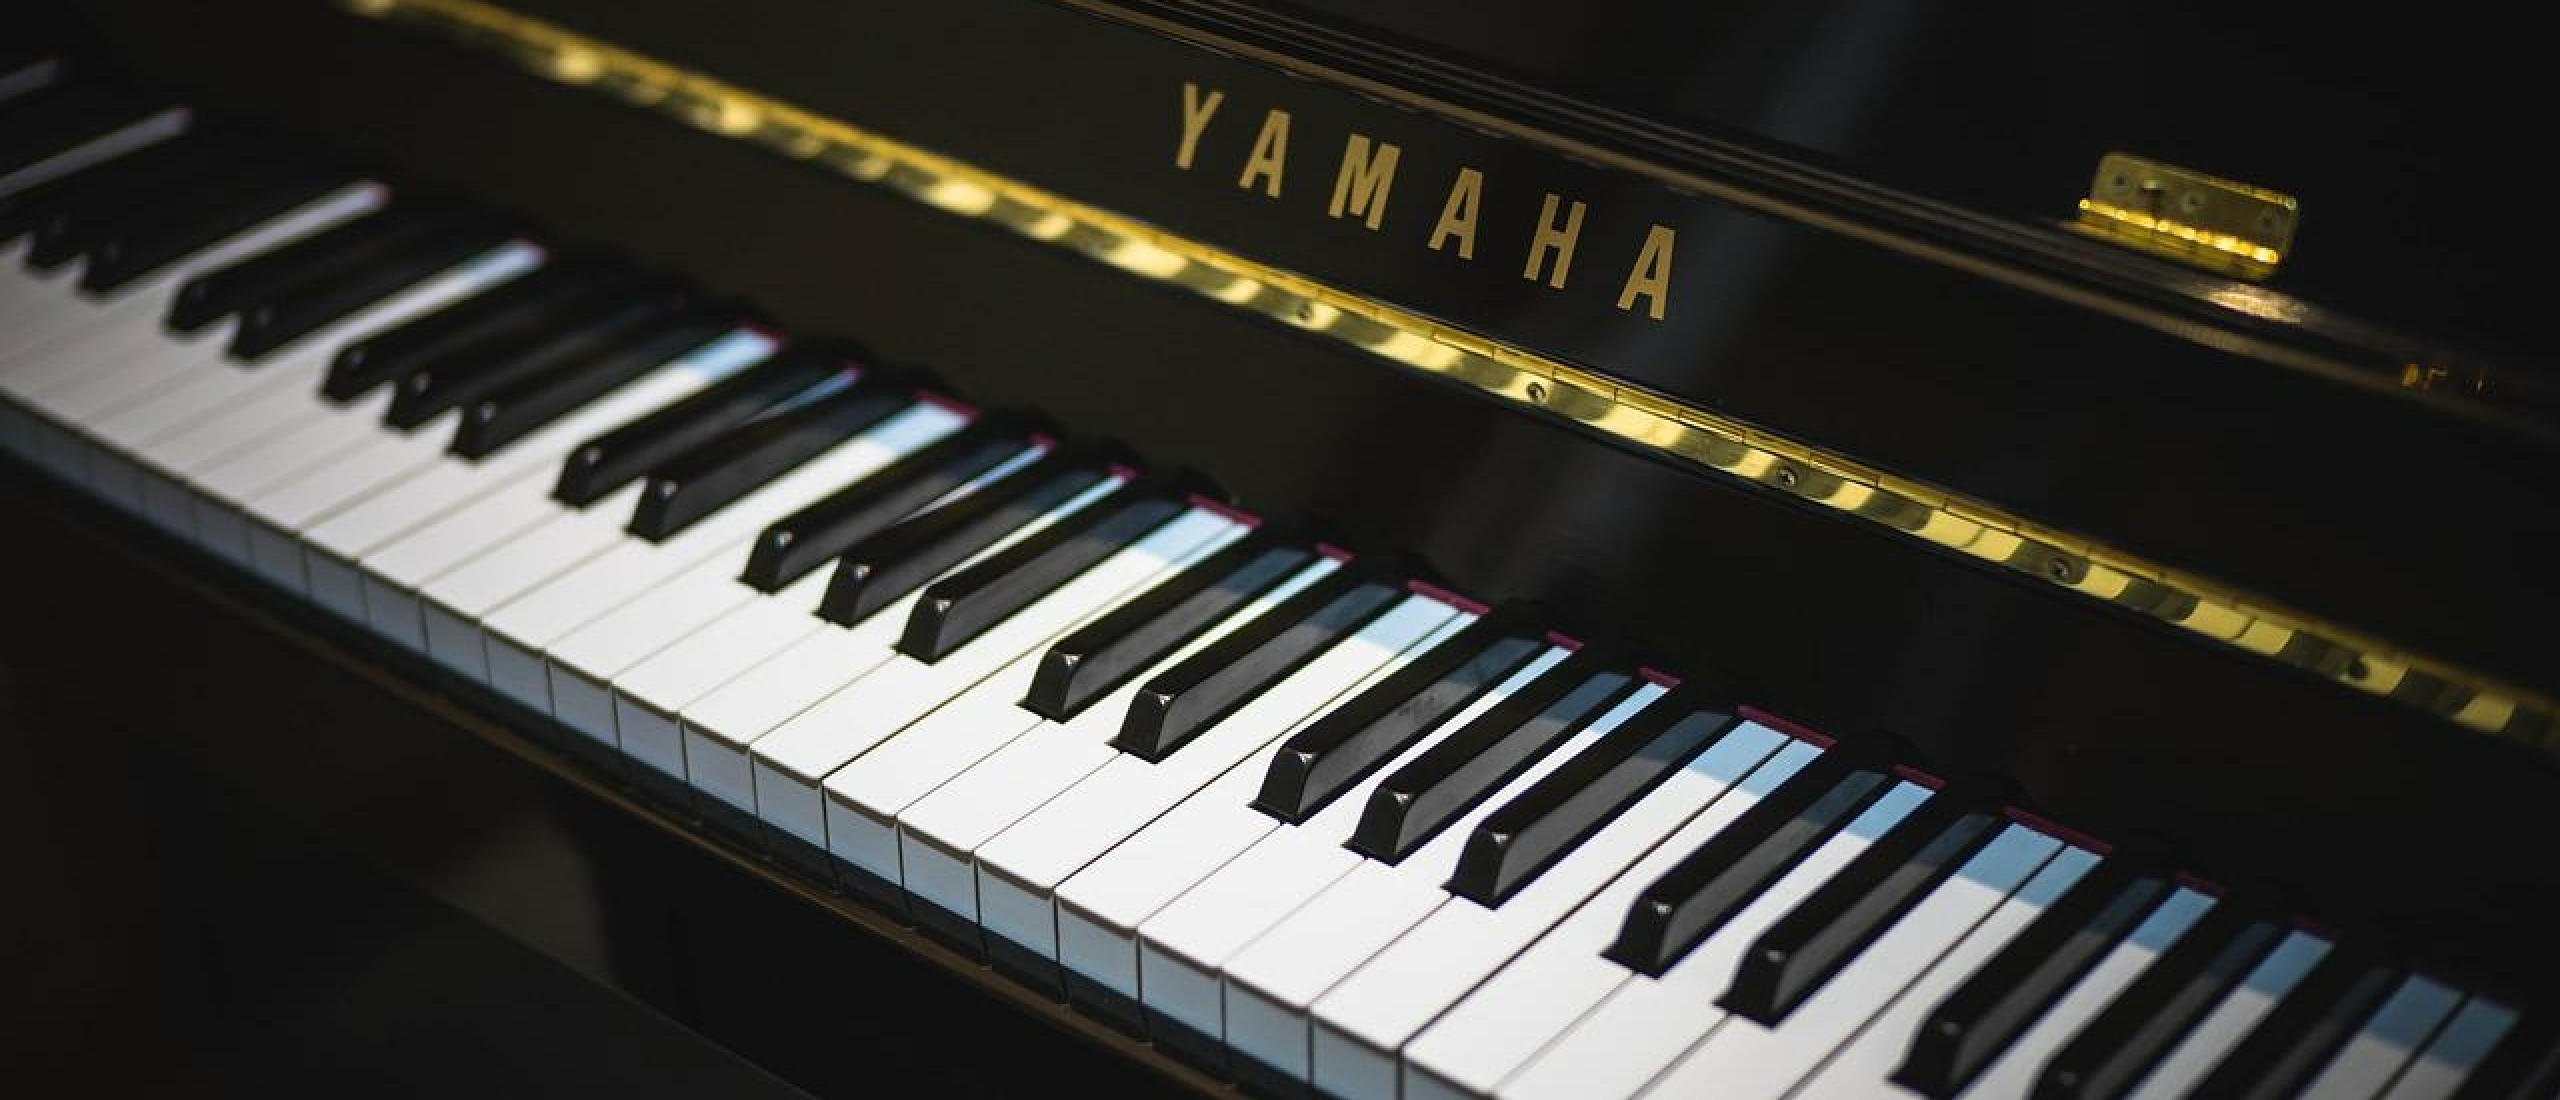 Wat zijn de meest bekende piano merken?